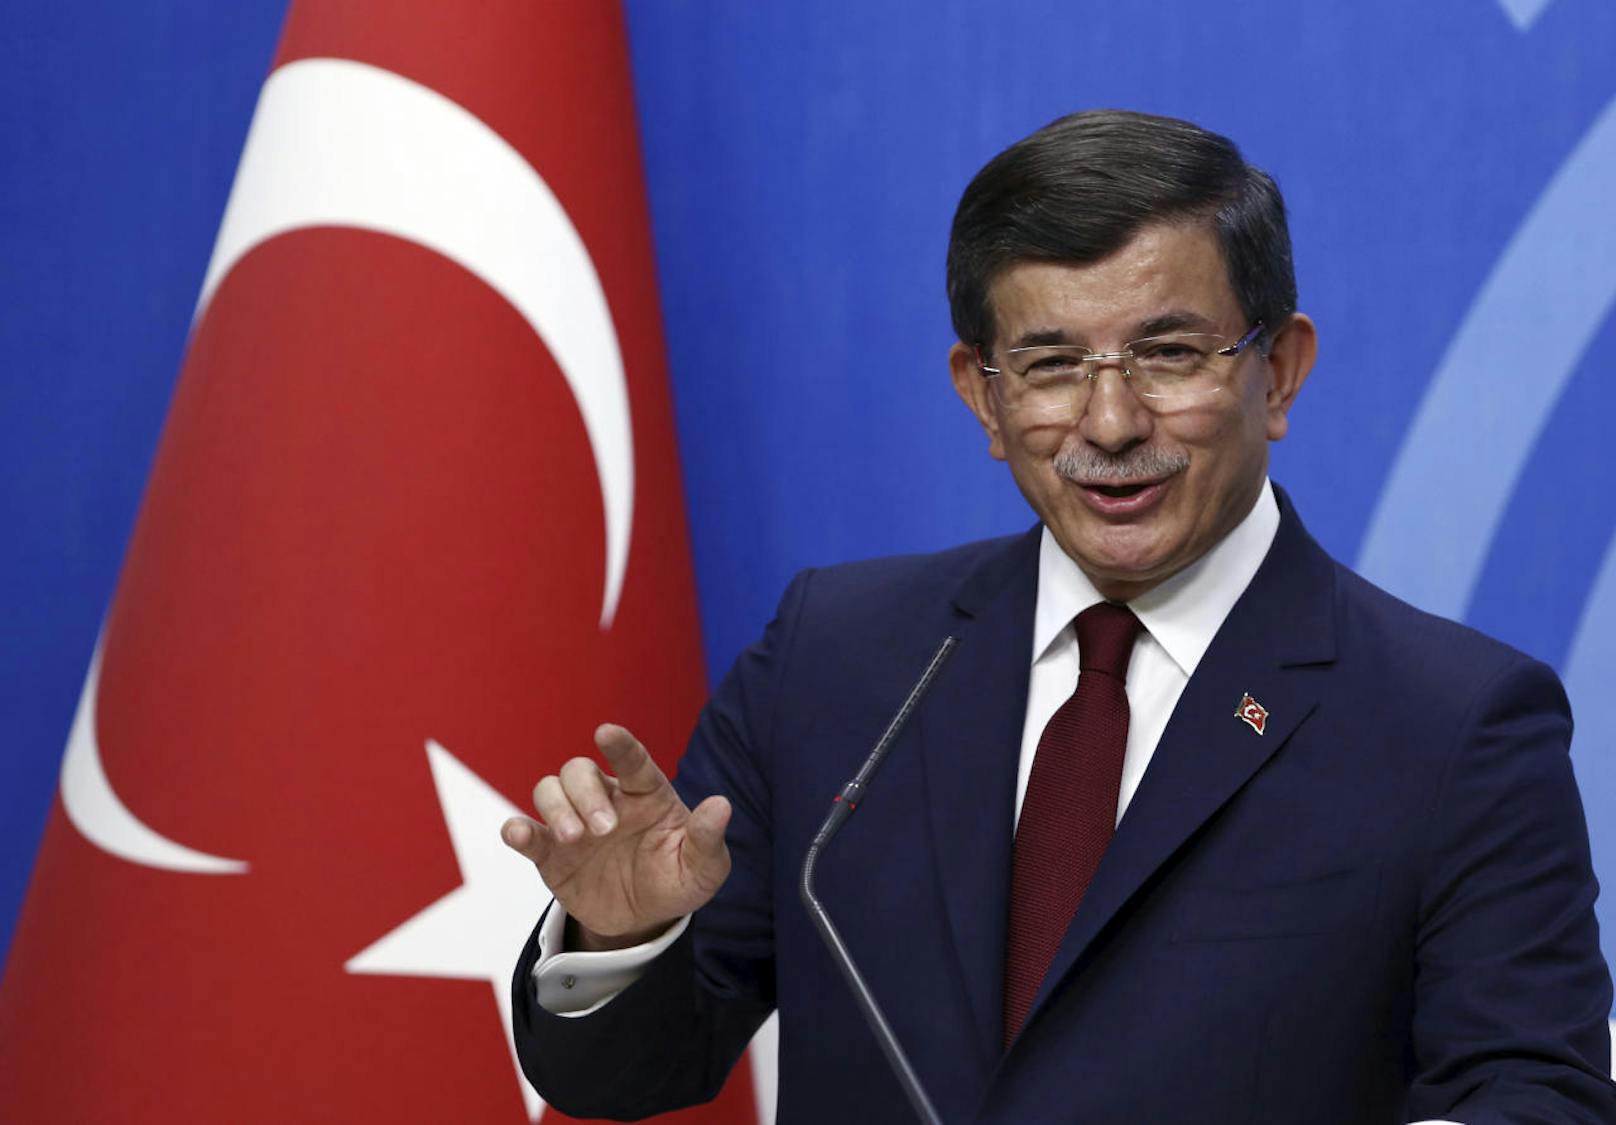 Ahmet Davutoglu, der als langjähriger Außenminister die politische Ideologie des "Neoosmanismus" vertrat, beklagte in einer Erklärung, die AKP habe sich "von ihren ursprünglichen Werten entfernt".